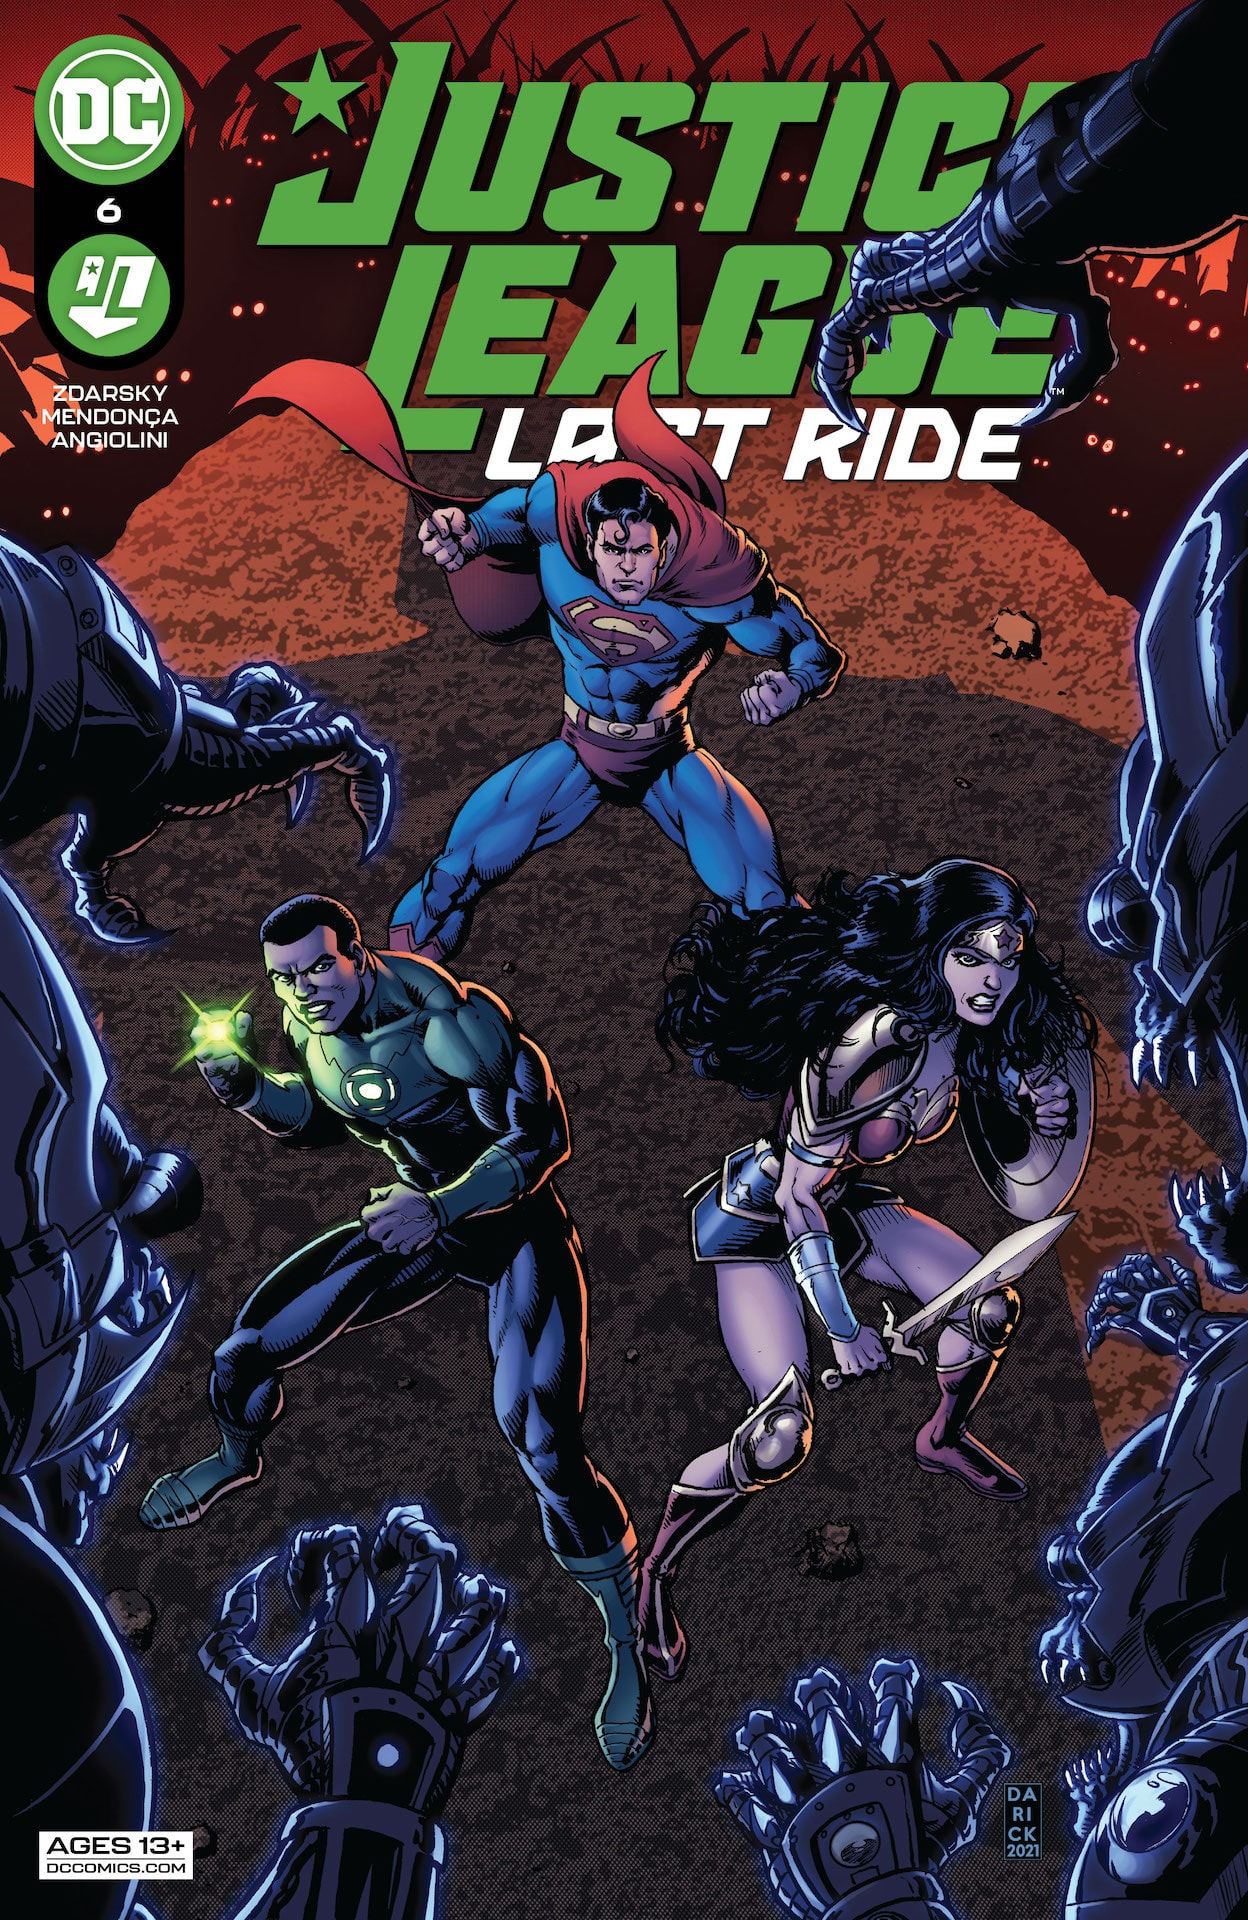 DC Preview: Justice League Last Ride #6